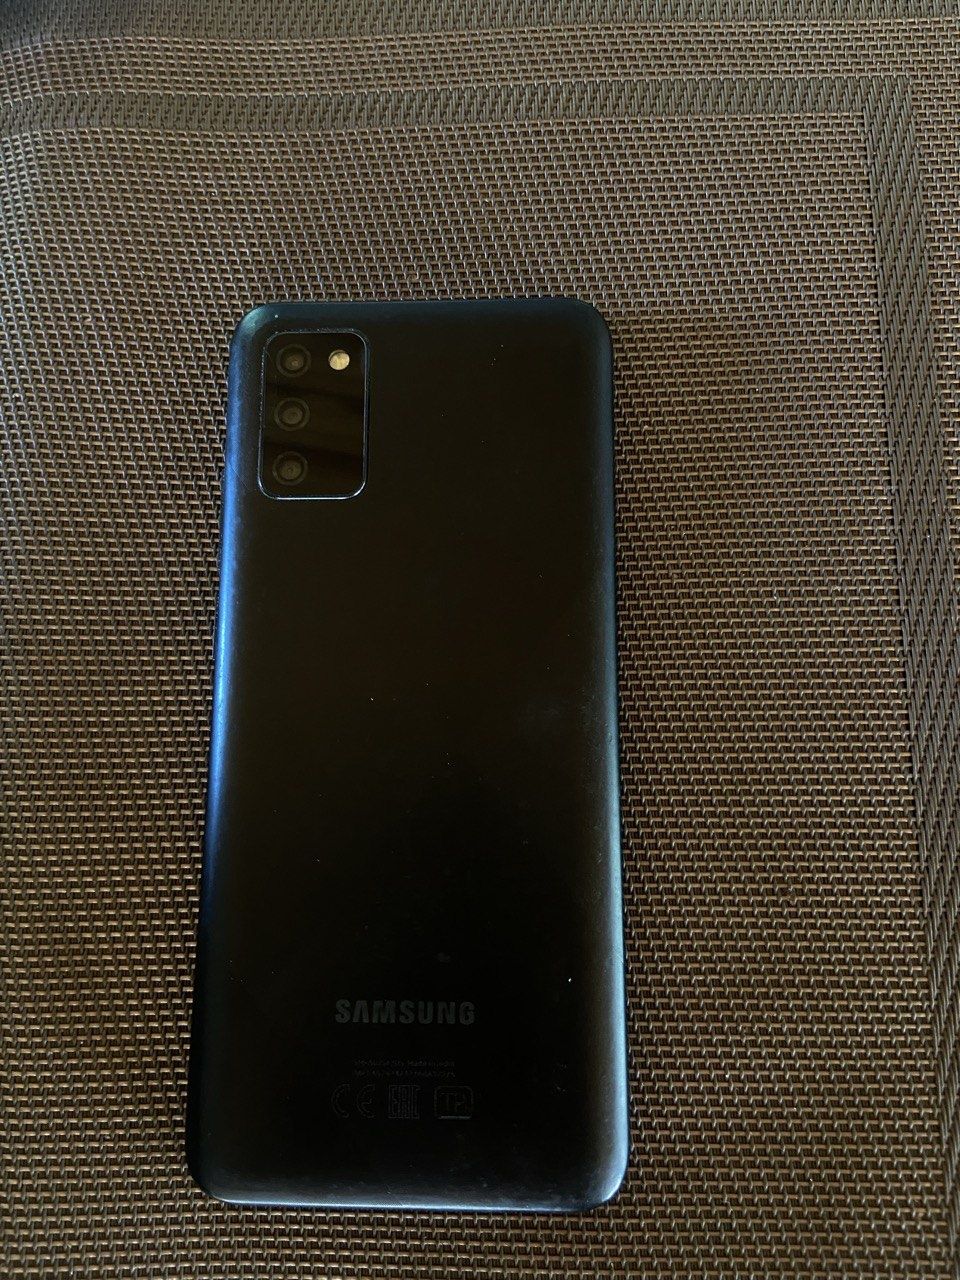 Samsung A02 S max